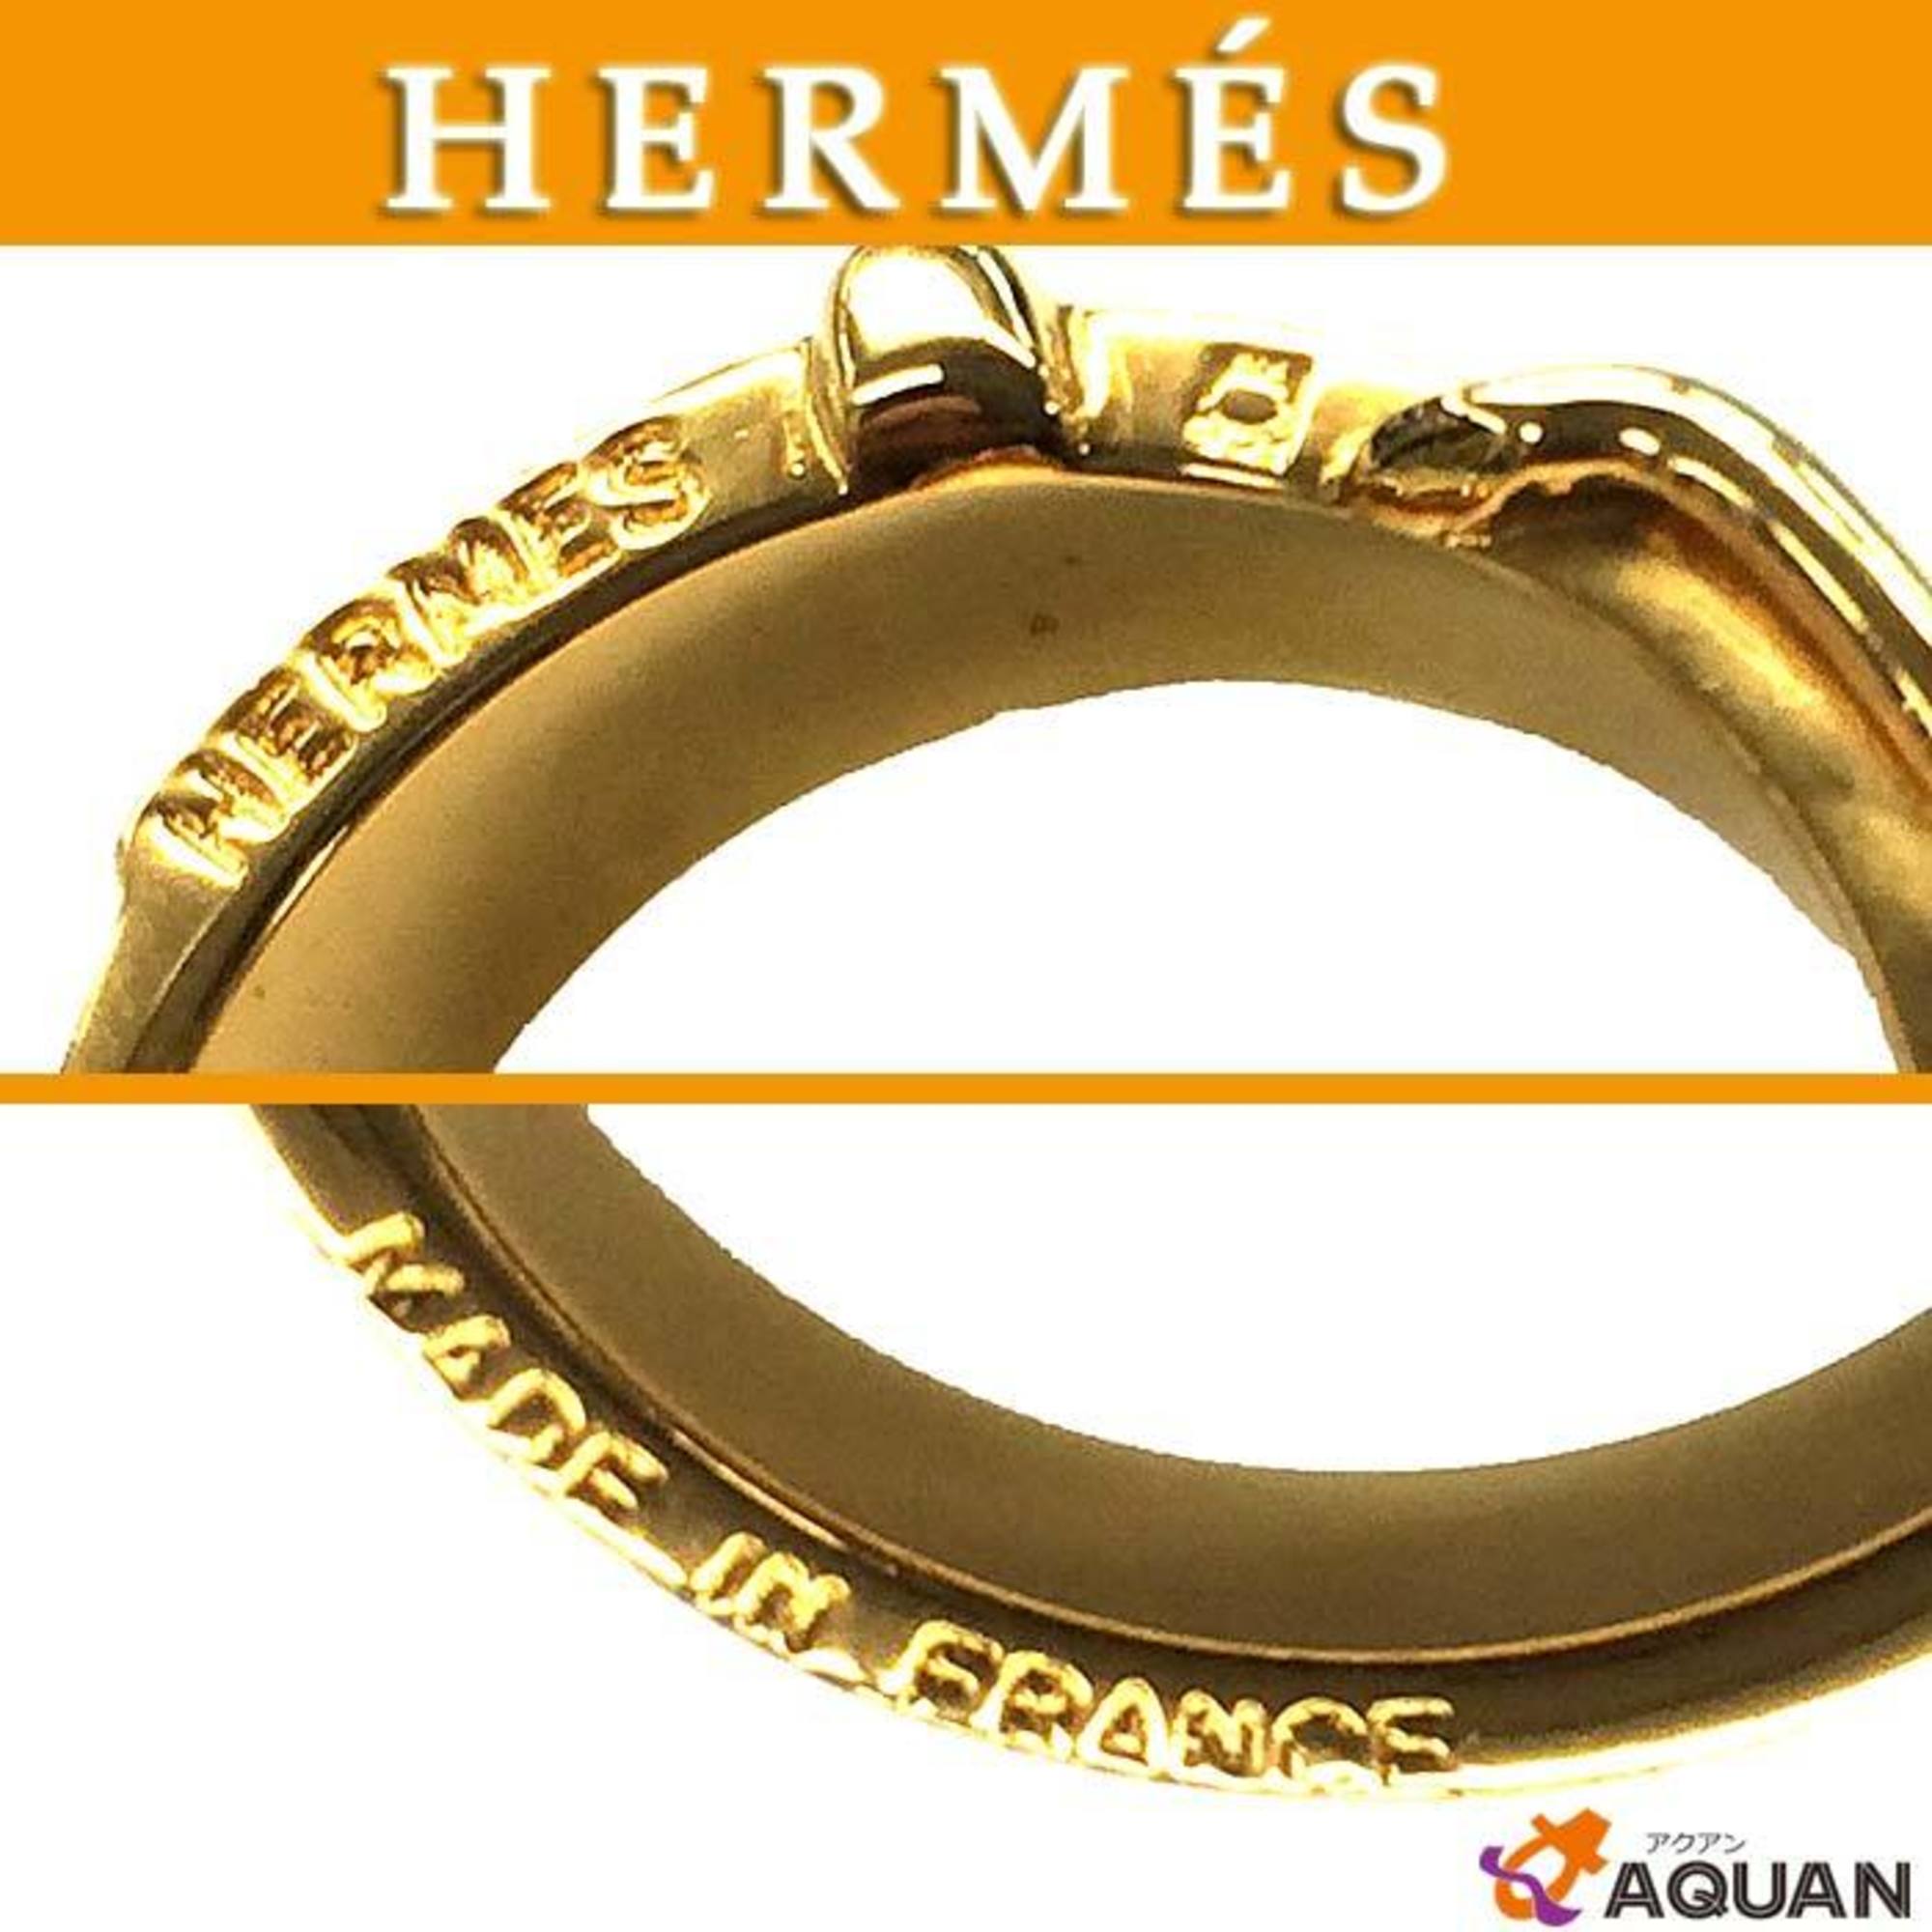 Hermes HERMES scarf ring belt motif gold color closure aq6539